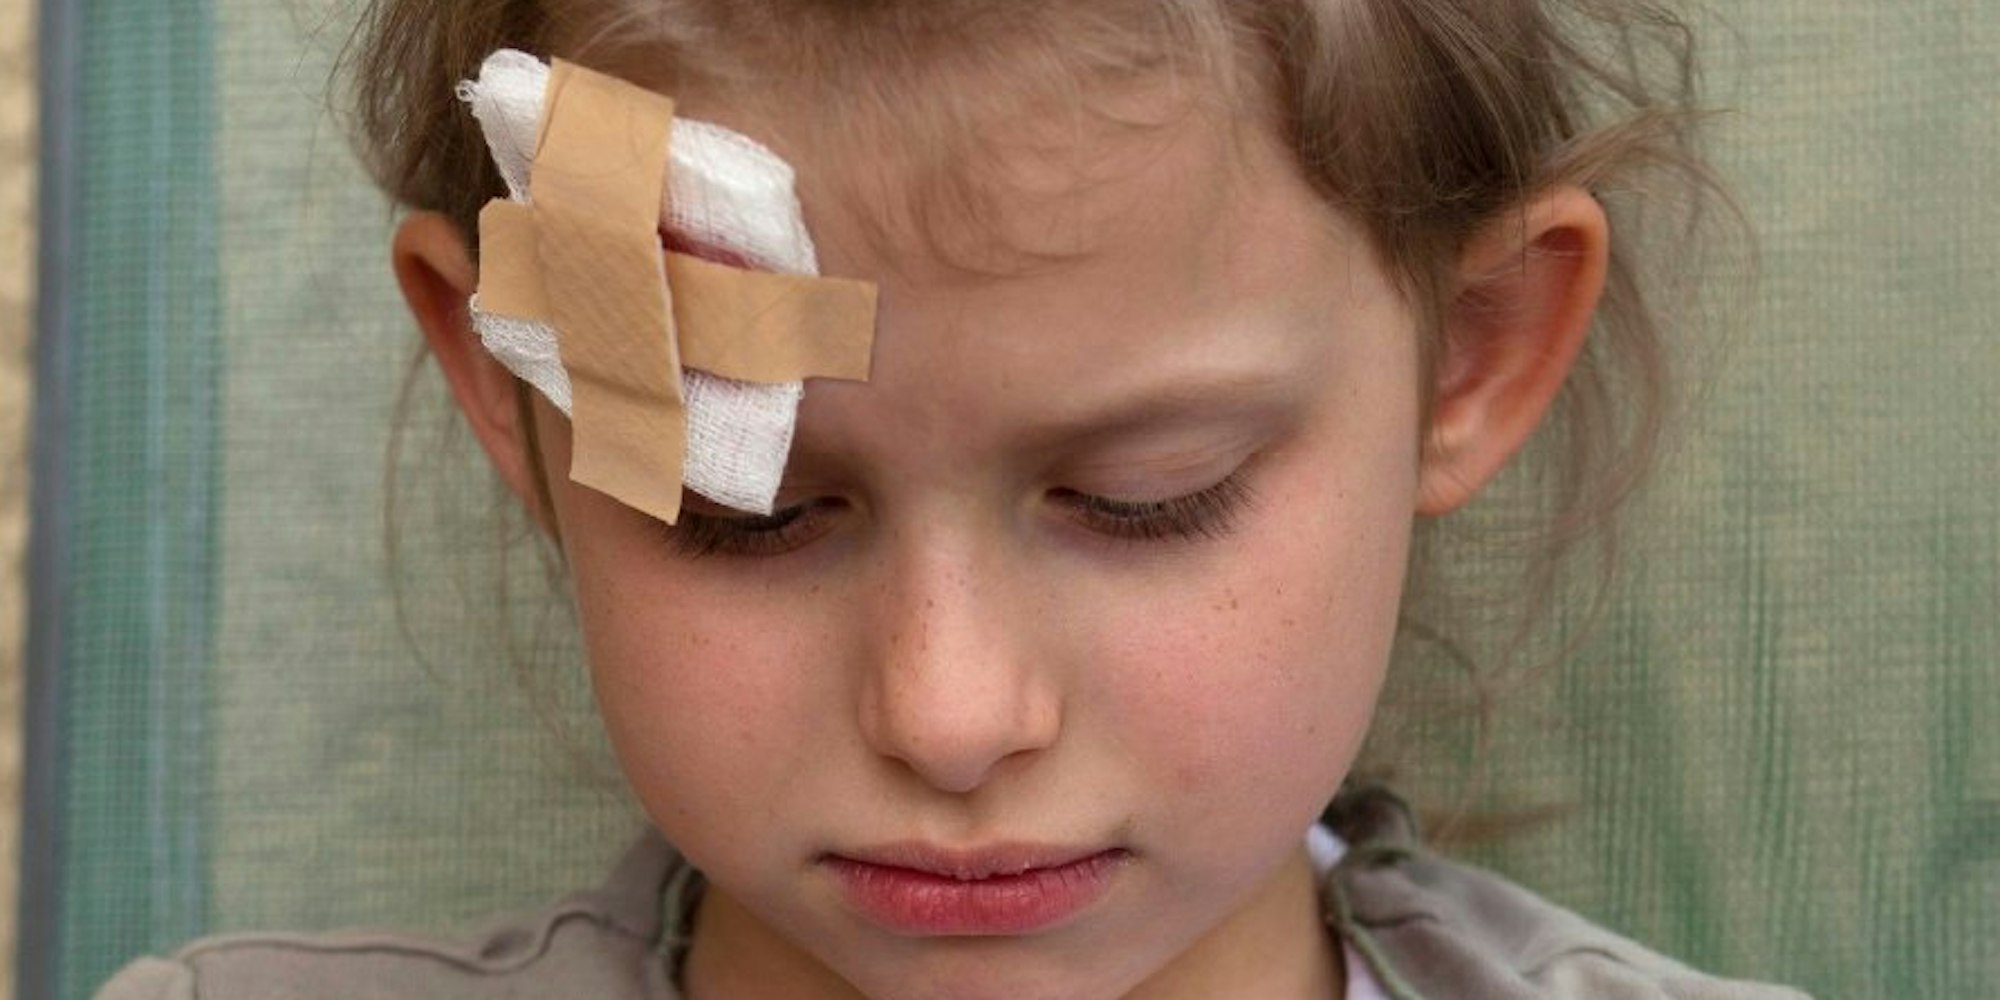 Selbst wenn alles in Ordnung scheint, Eltern sollten ihre Kinder nach einer Kopfverletzung beobachten.